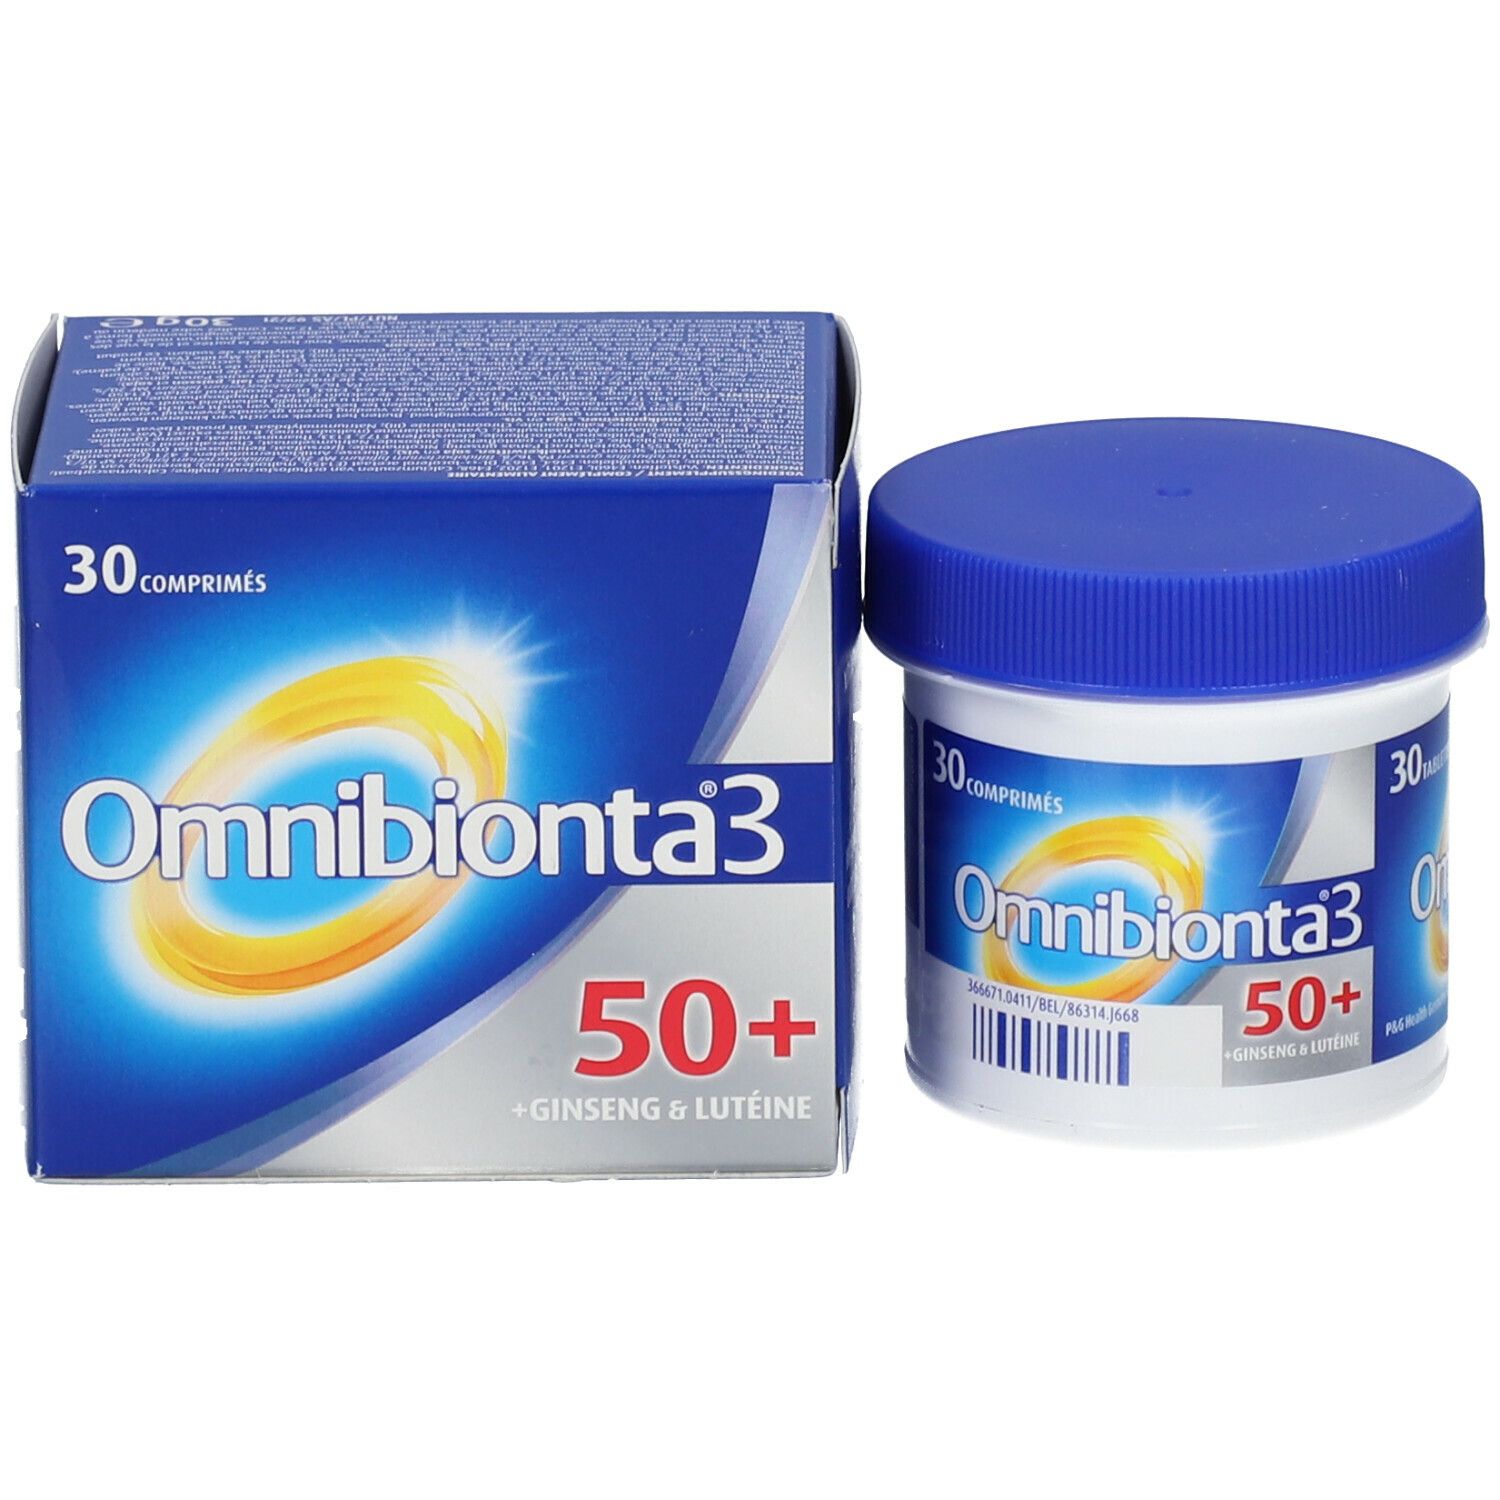 Omnibionta 3 50+